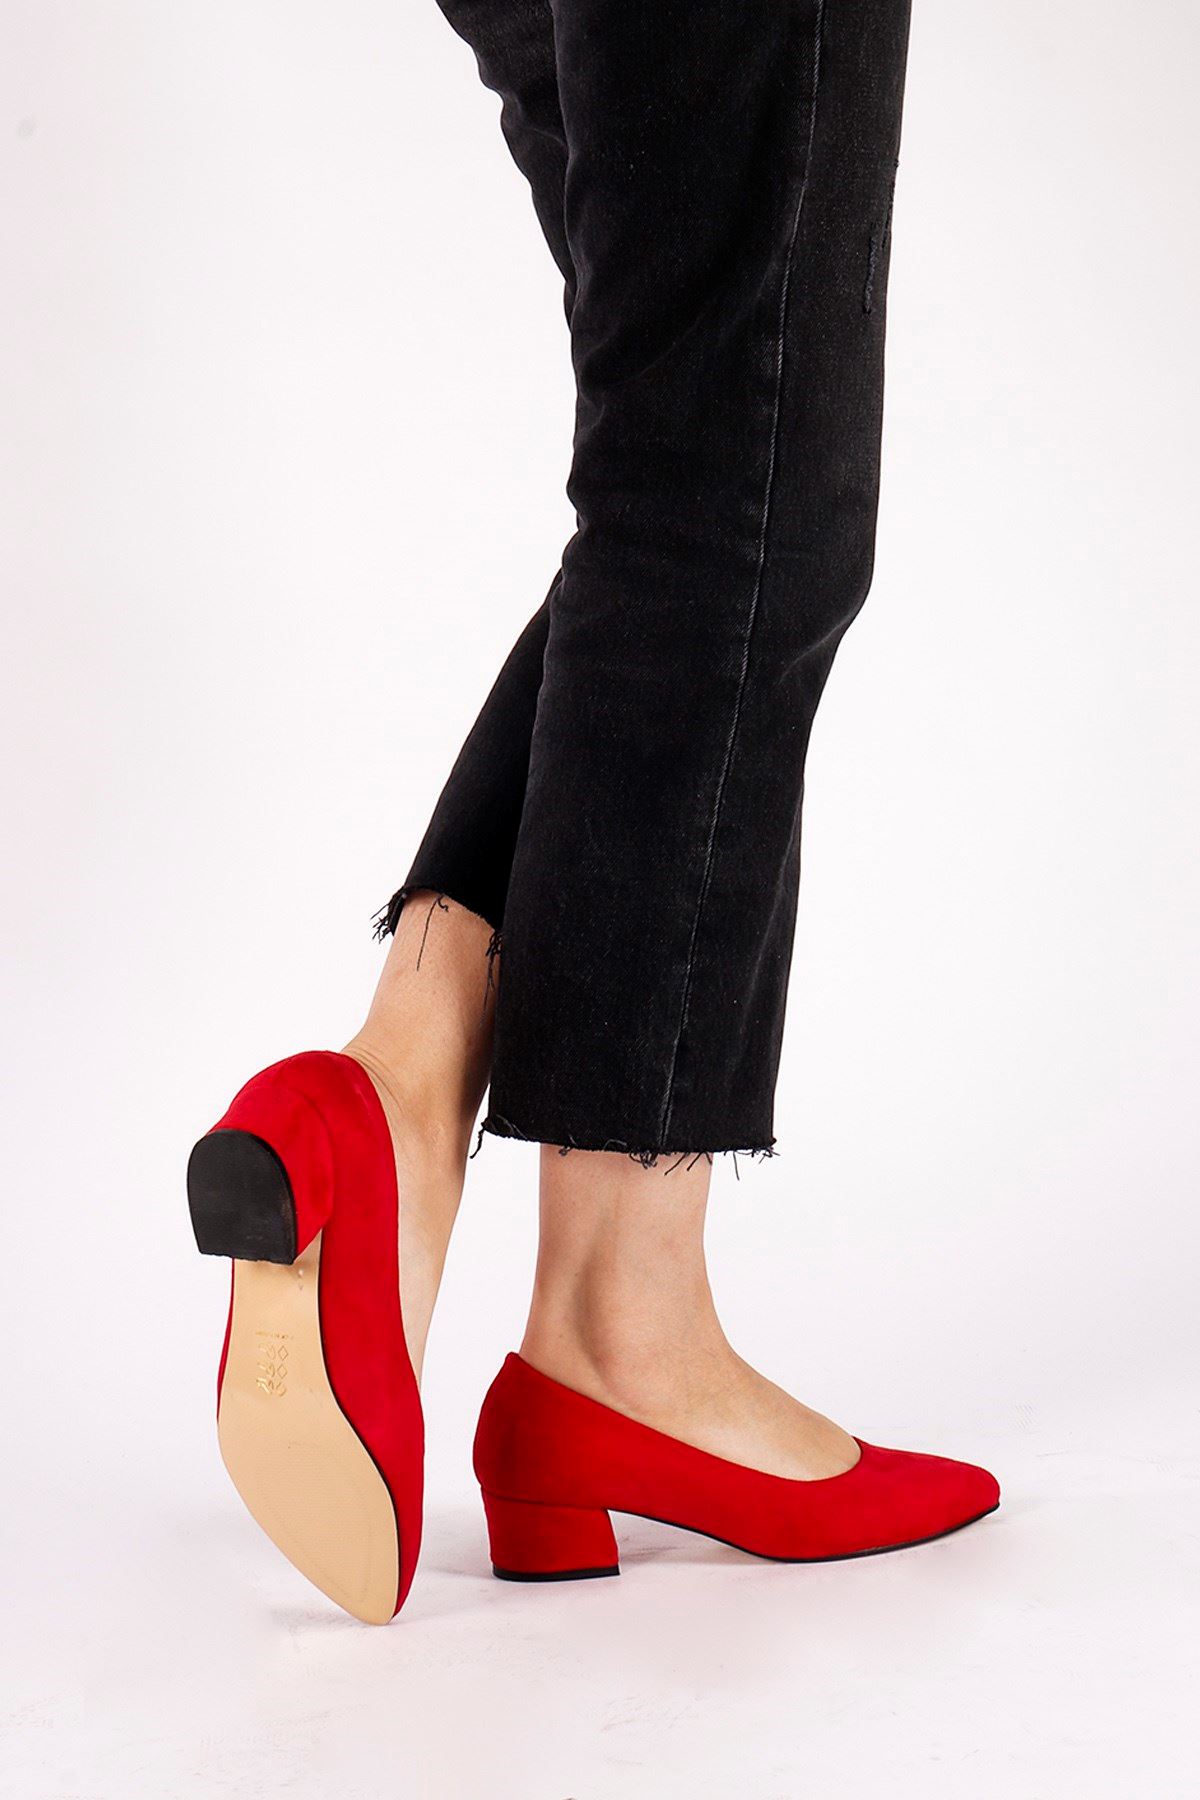 Sandra Kırmızı Süet Topuklu Ayakkabı